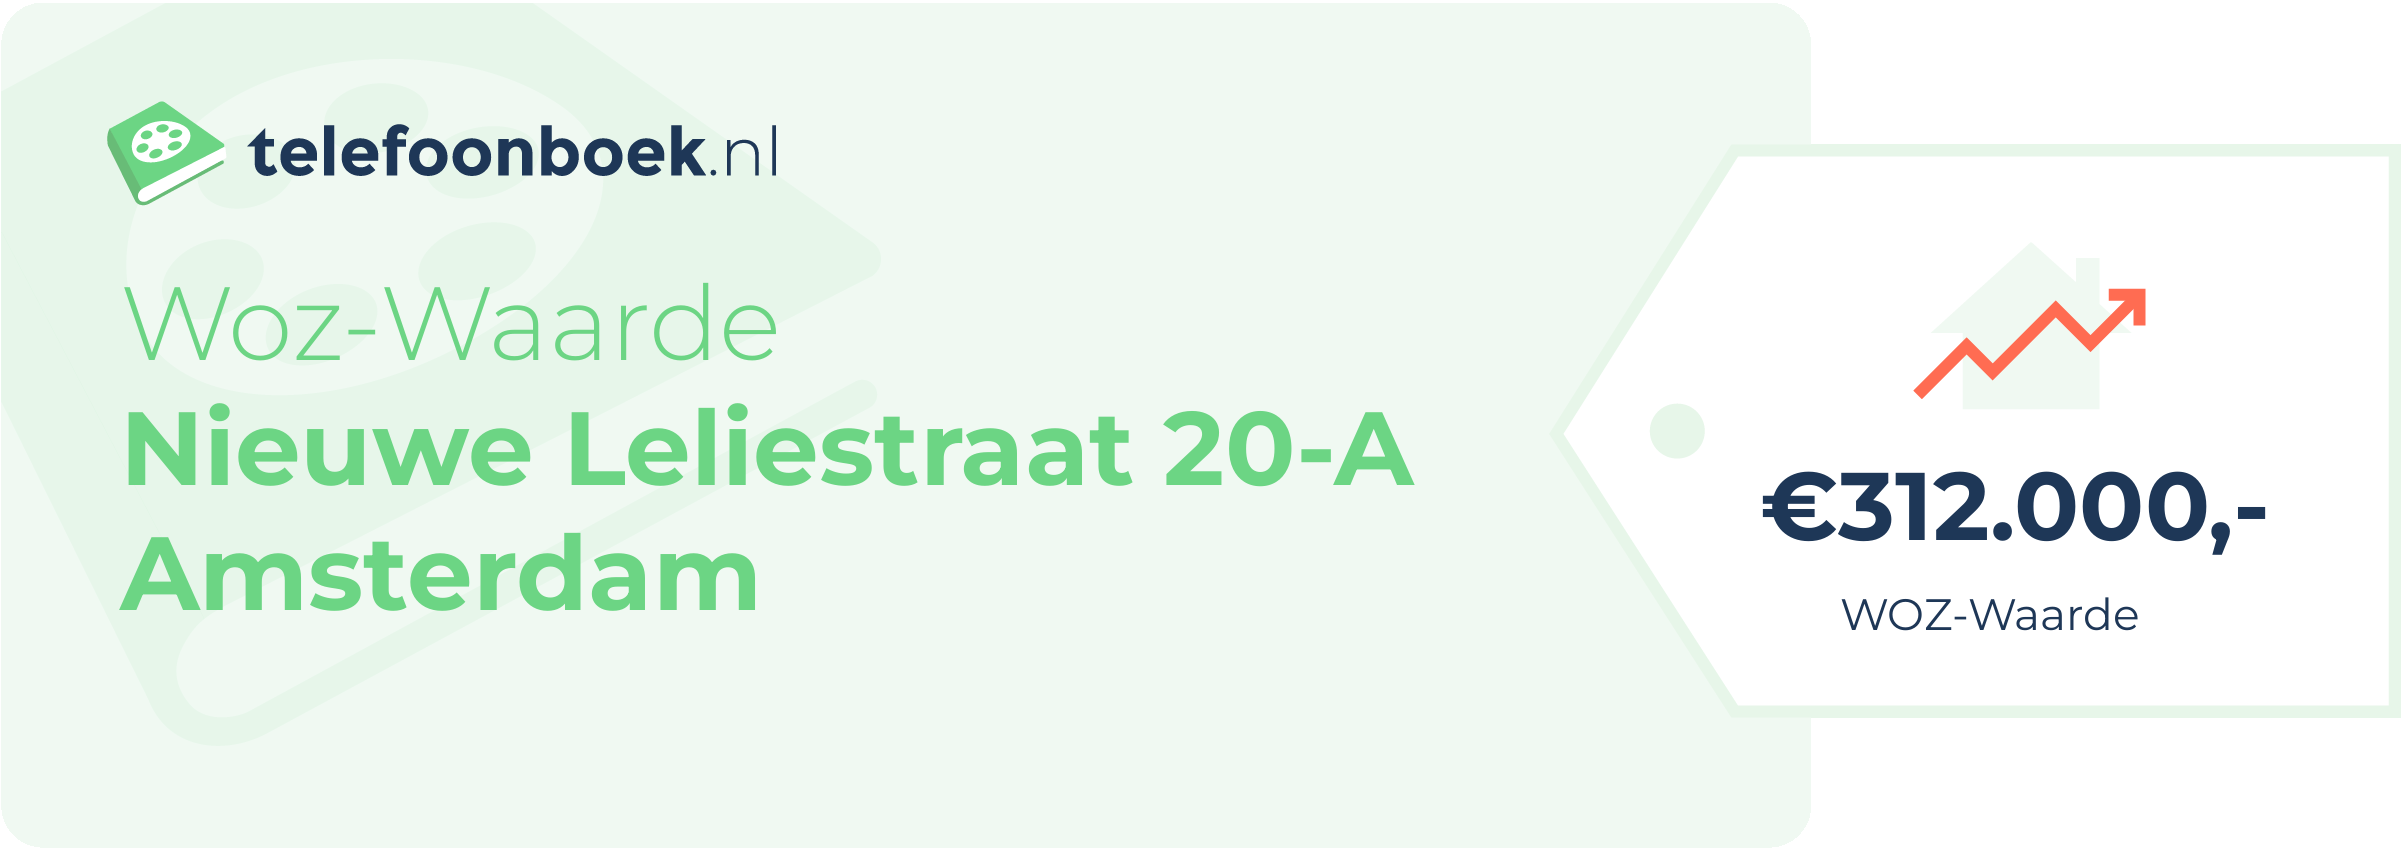 WOZ-waarde Nieuwe Leliestraat 20-A Amsterdam